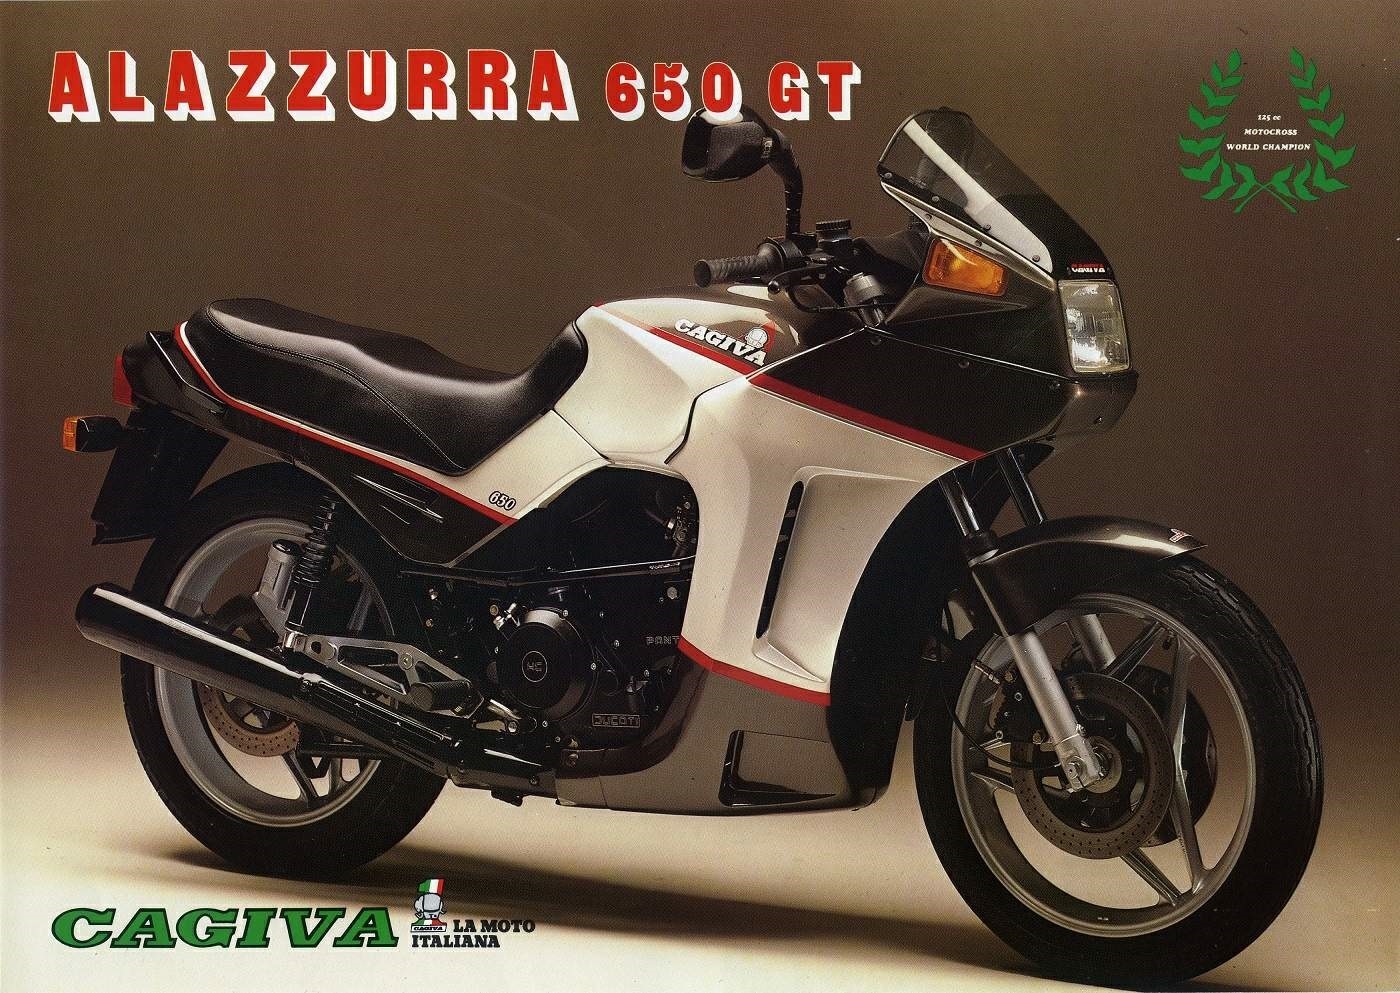 Moto del día: Cagiva Alazzurra 650